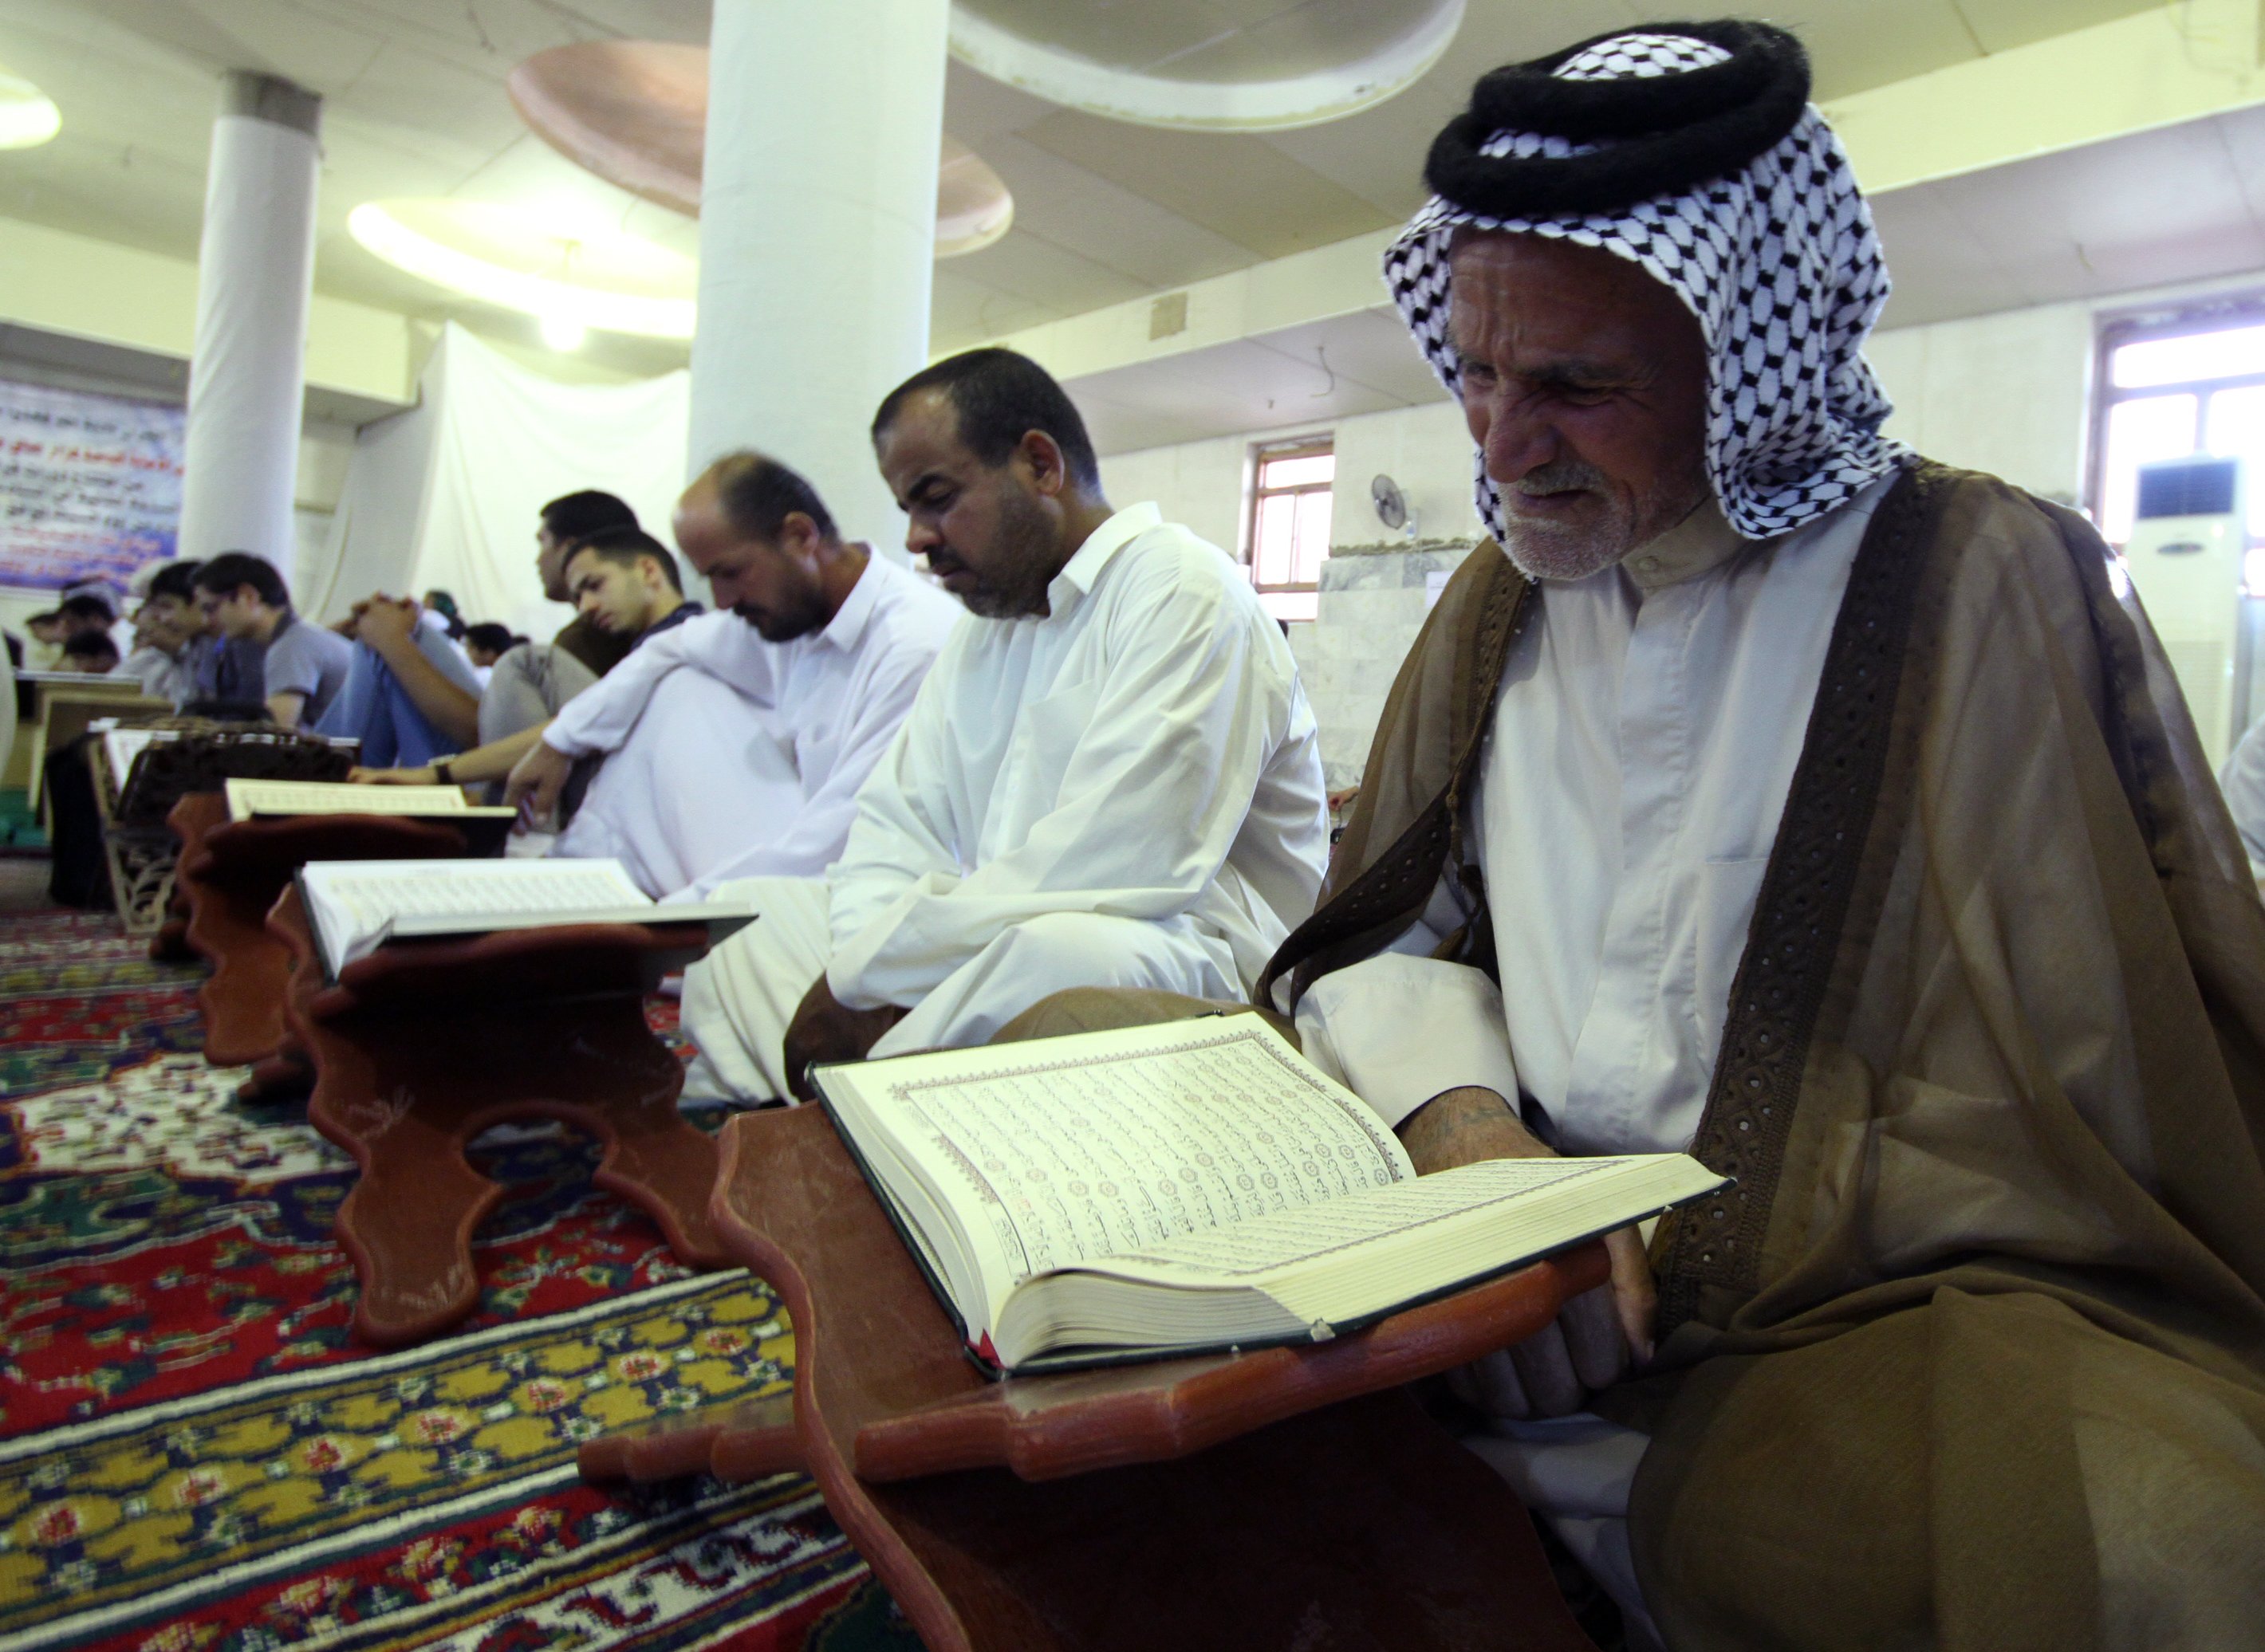 معهد القرآن الكريم يقيم أمسية قرآنيّة في مقام صافي الصفا ( رضوان الله عليه)